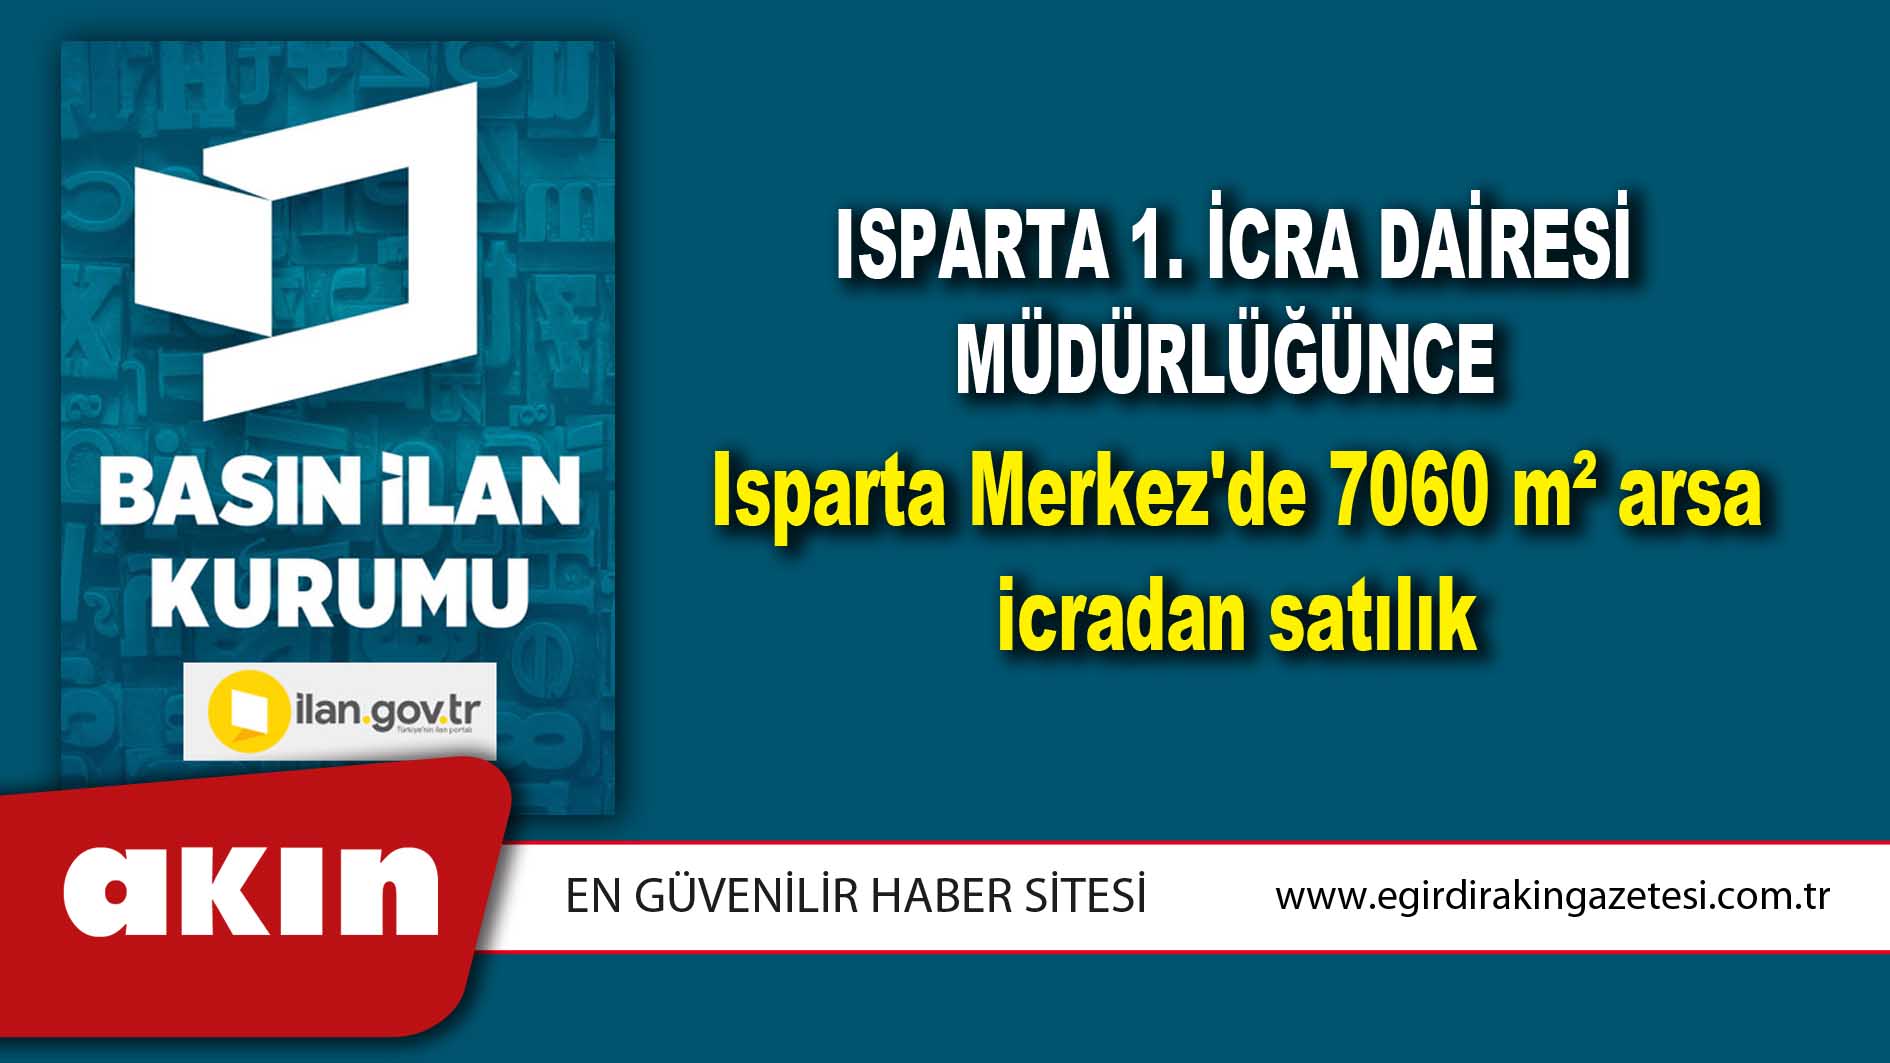 Isparta 1. İcra Dairesi Müdürlüğünce Isparta Merkez'de 7060 m² arsa icradan satılık